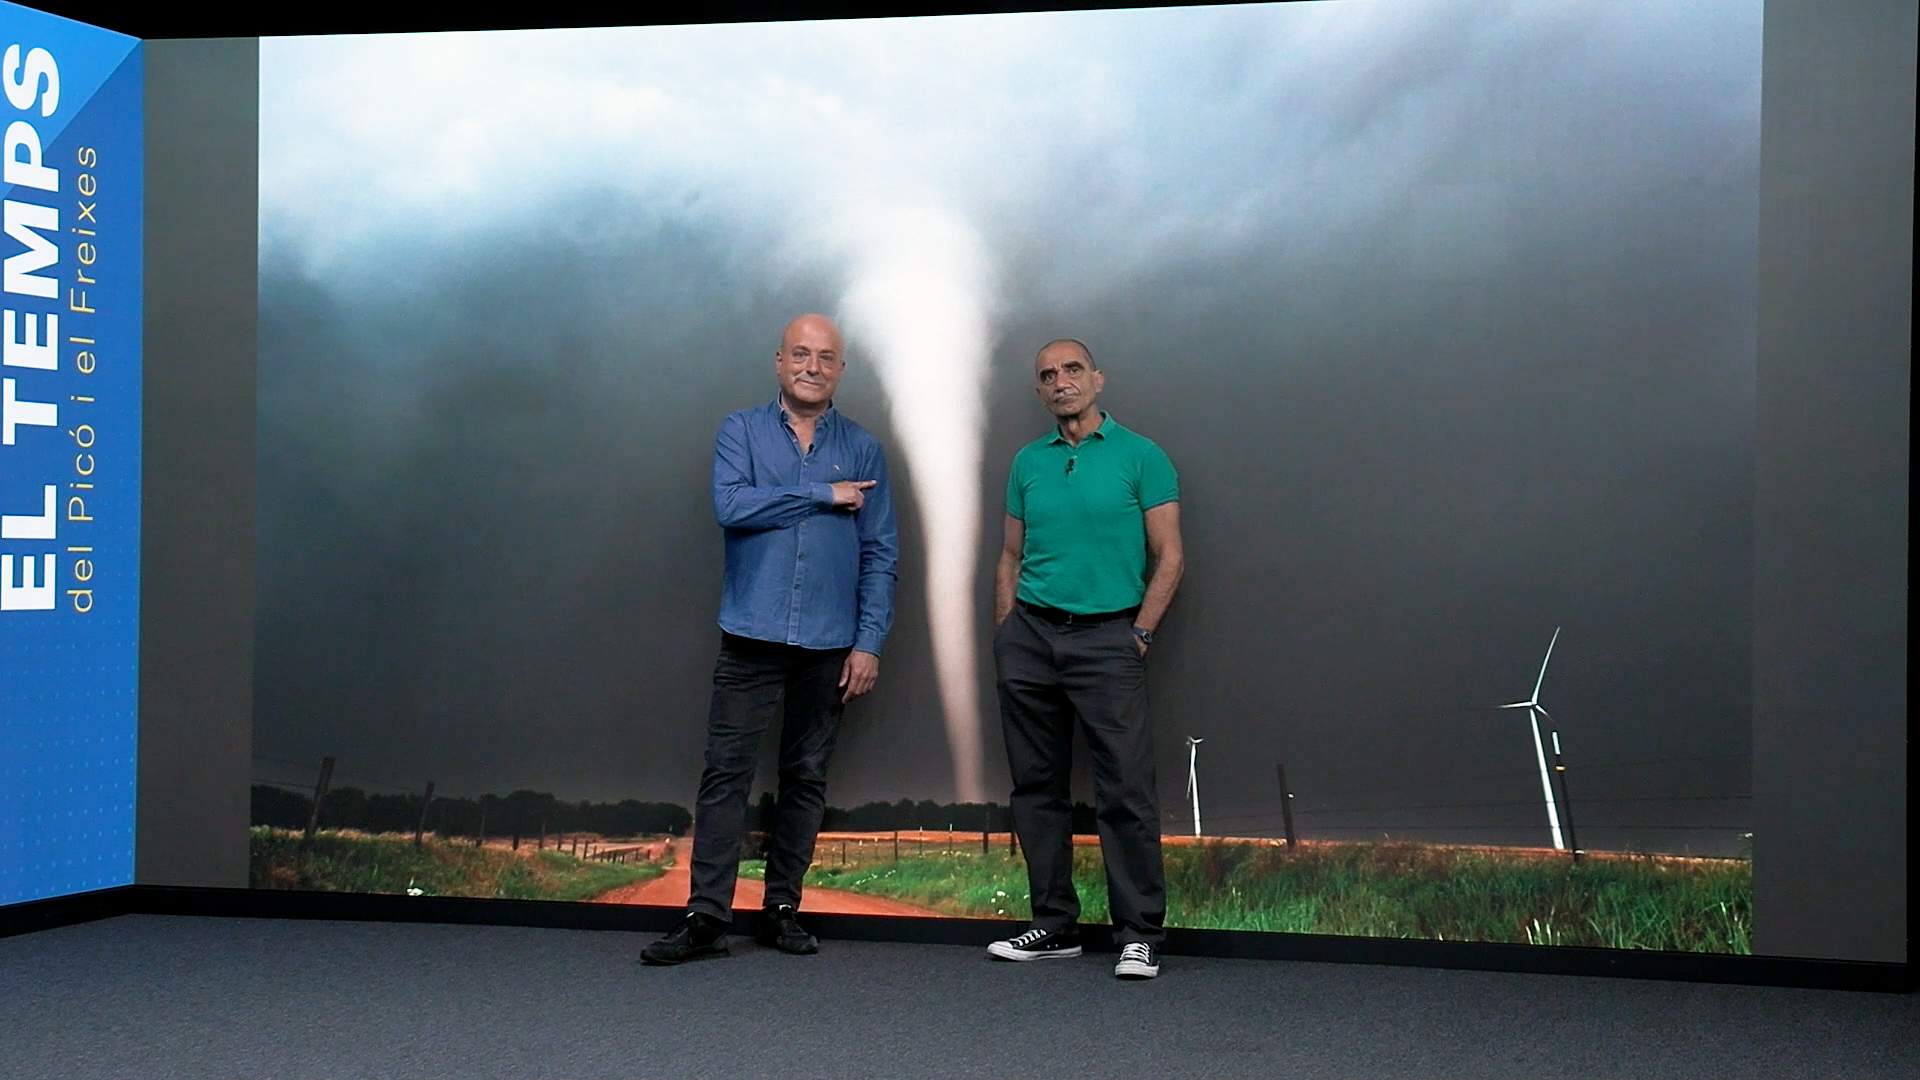 La anécdota de Picó y Freixes: tornados en Europa con granizadas y el tornado de Badalona